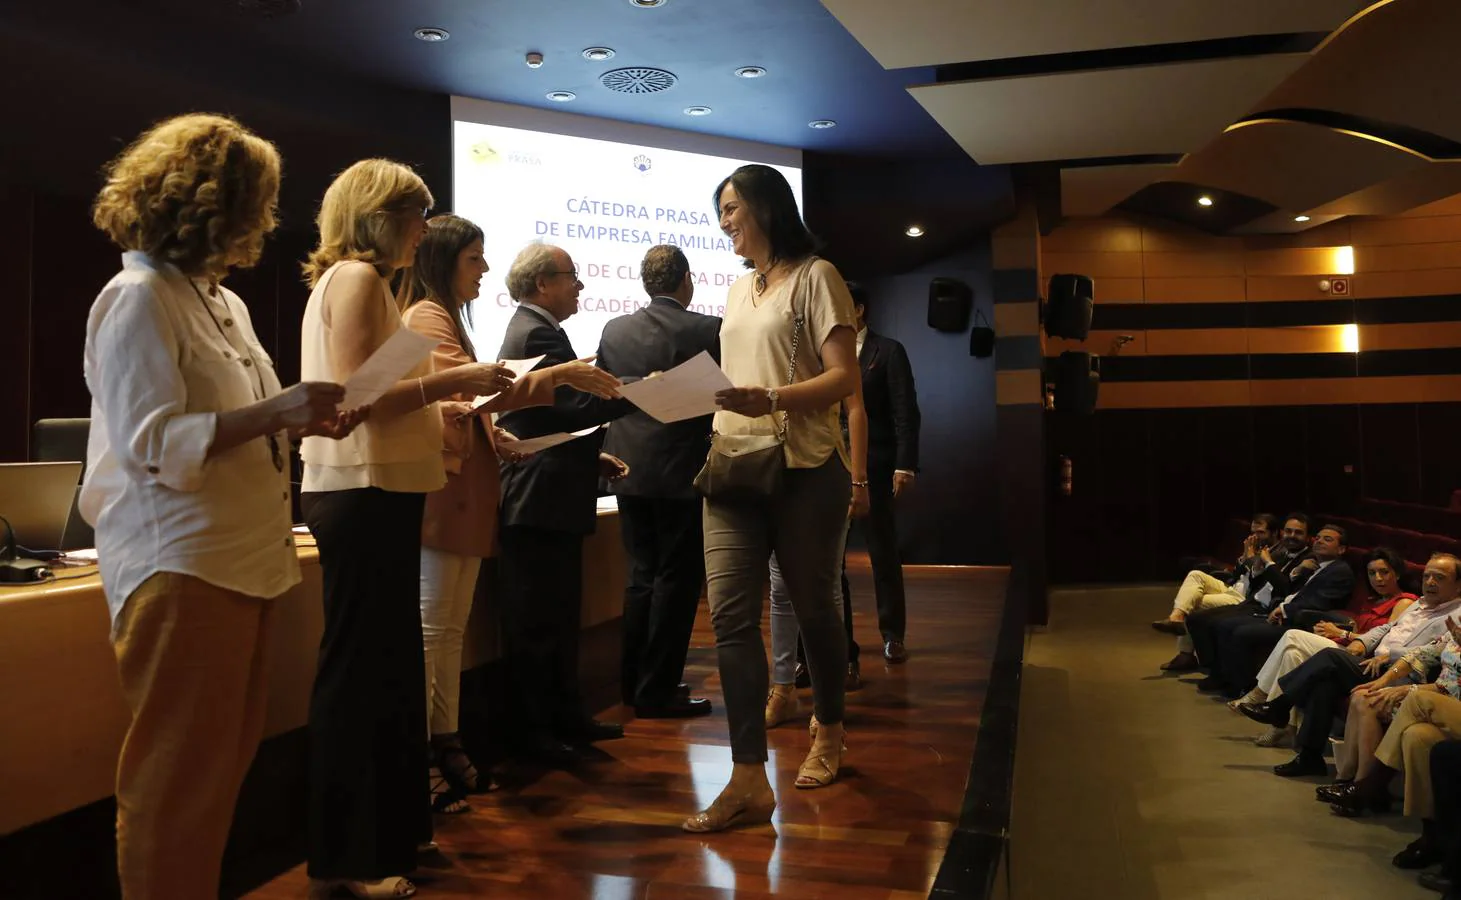 El cierre del curso de la Cátedra Prasa Empresa Familiar en Córdoba, en imágenes